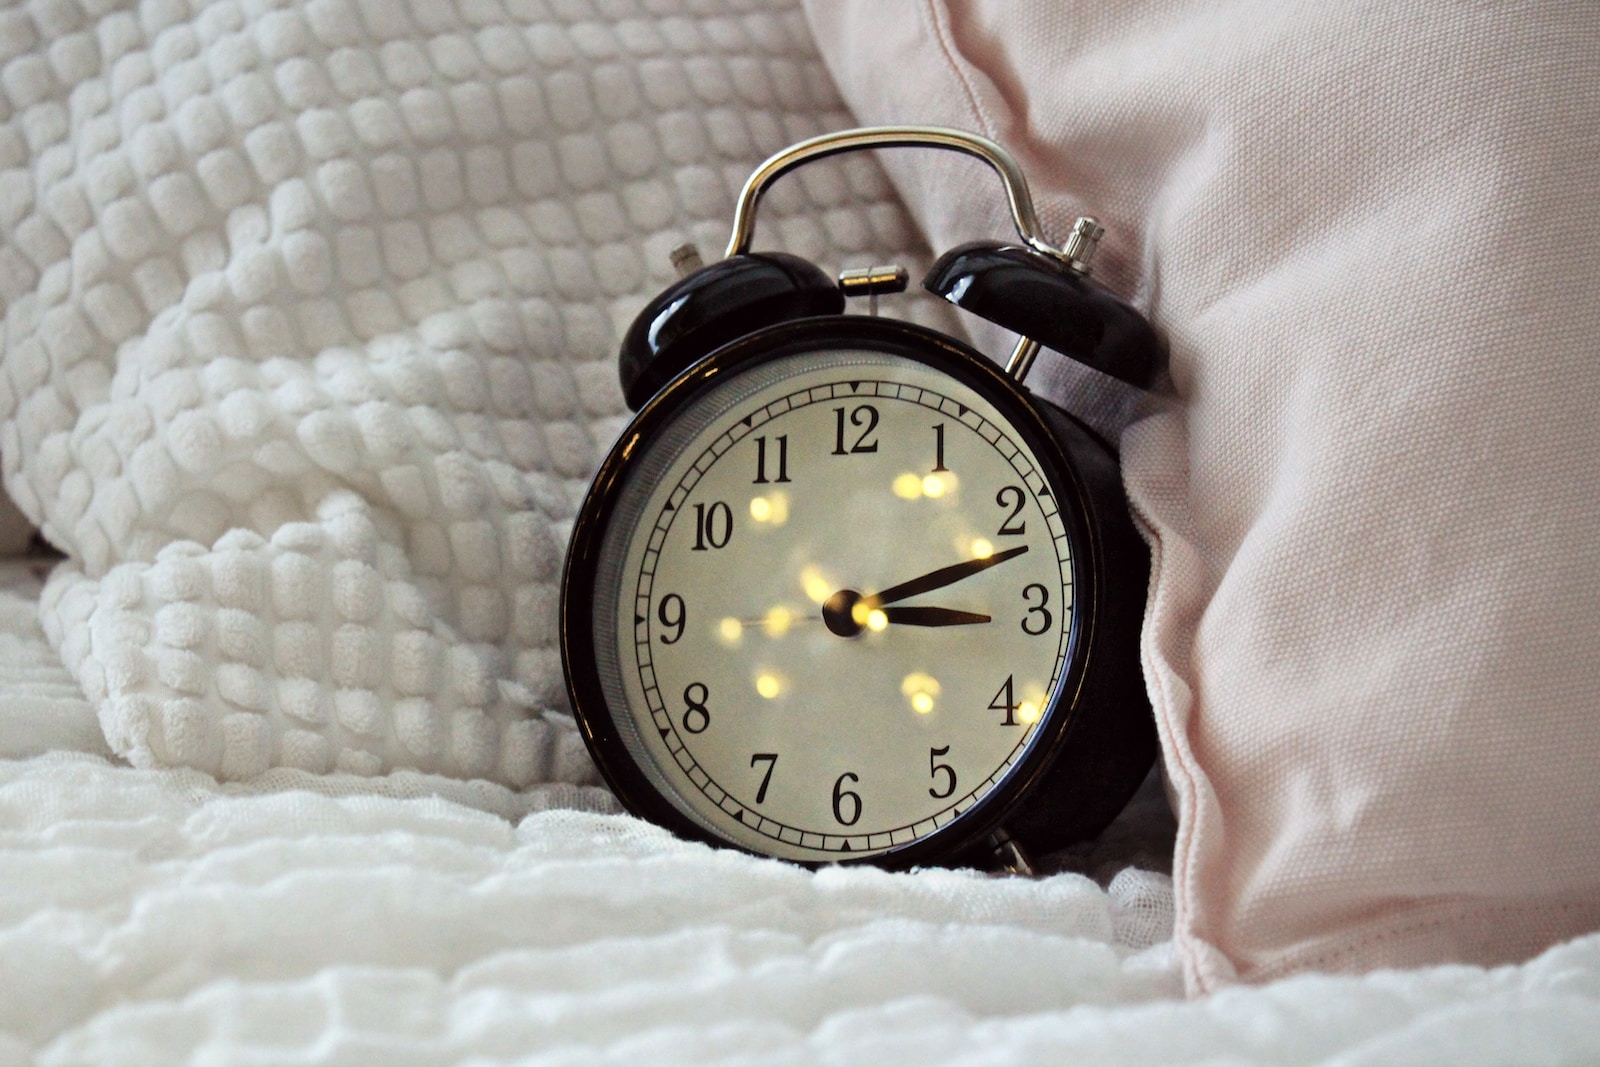 round black alarm clock displaying 3:12